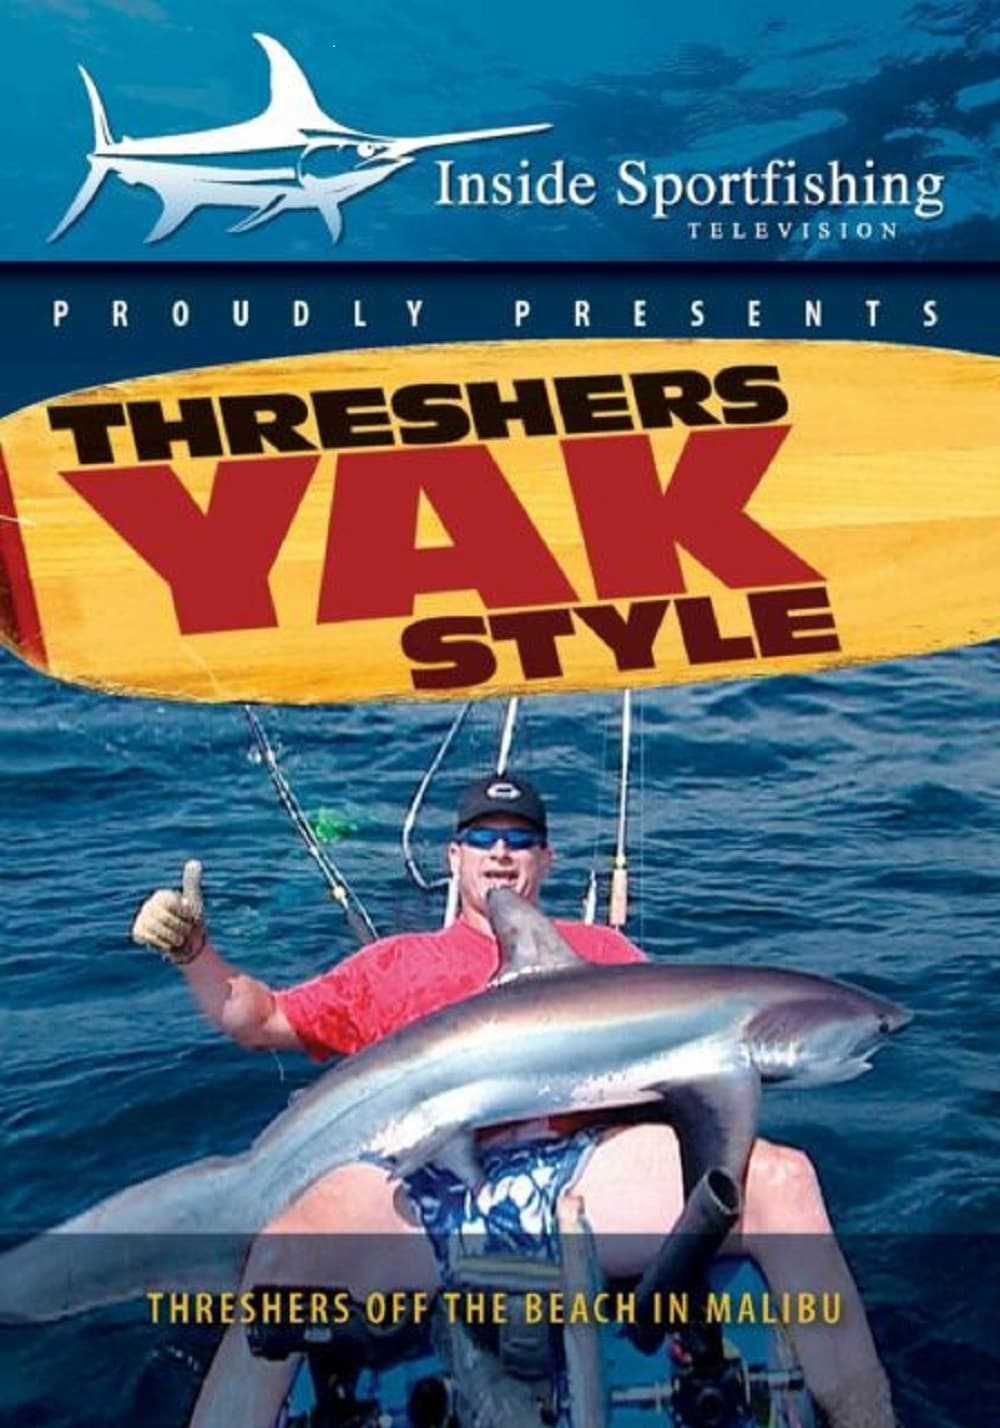 Inside Sportfishing: Threshers Yak Style